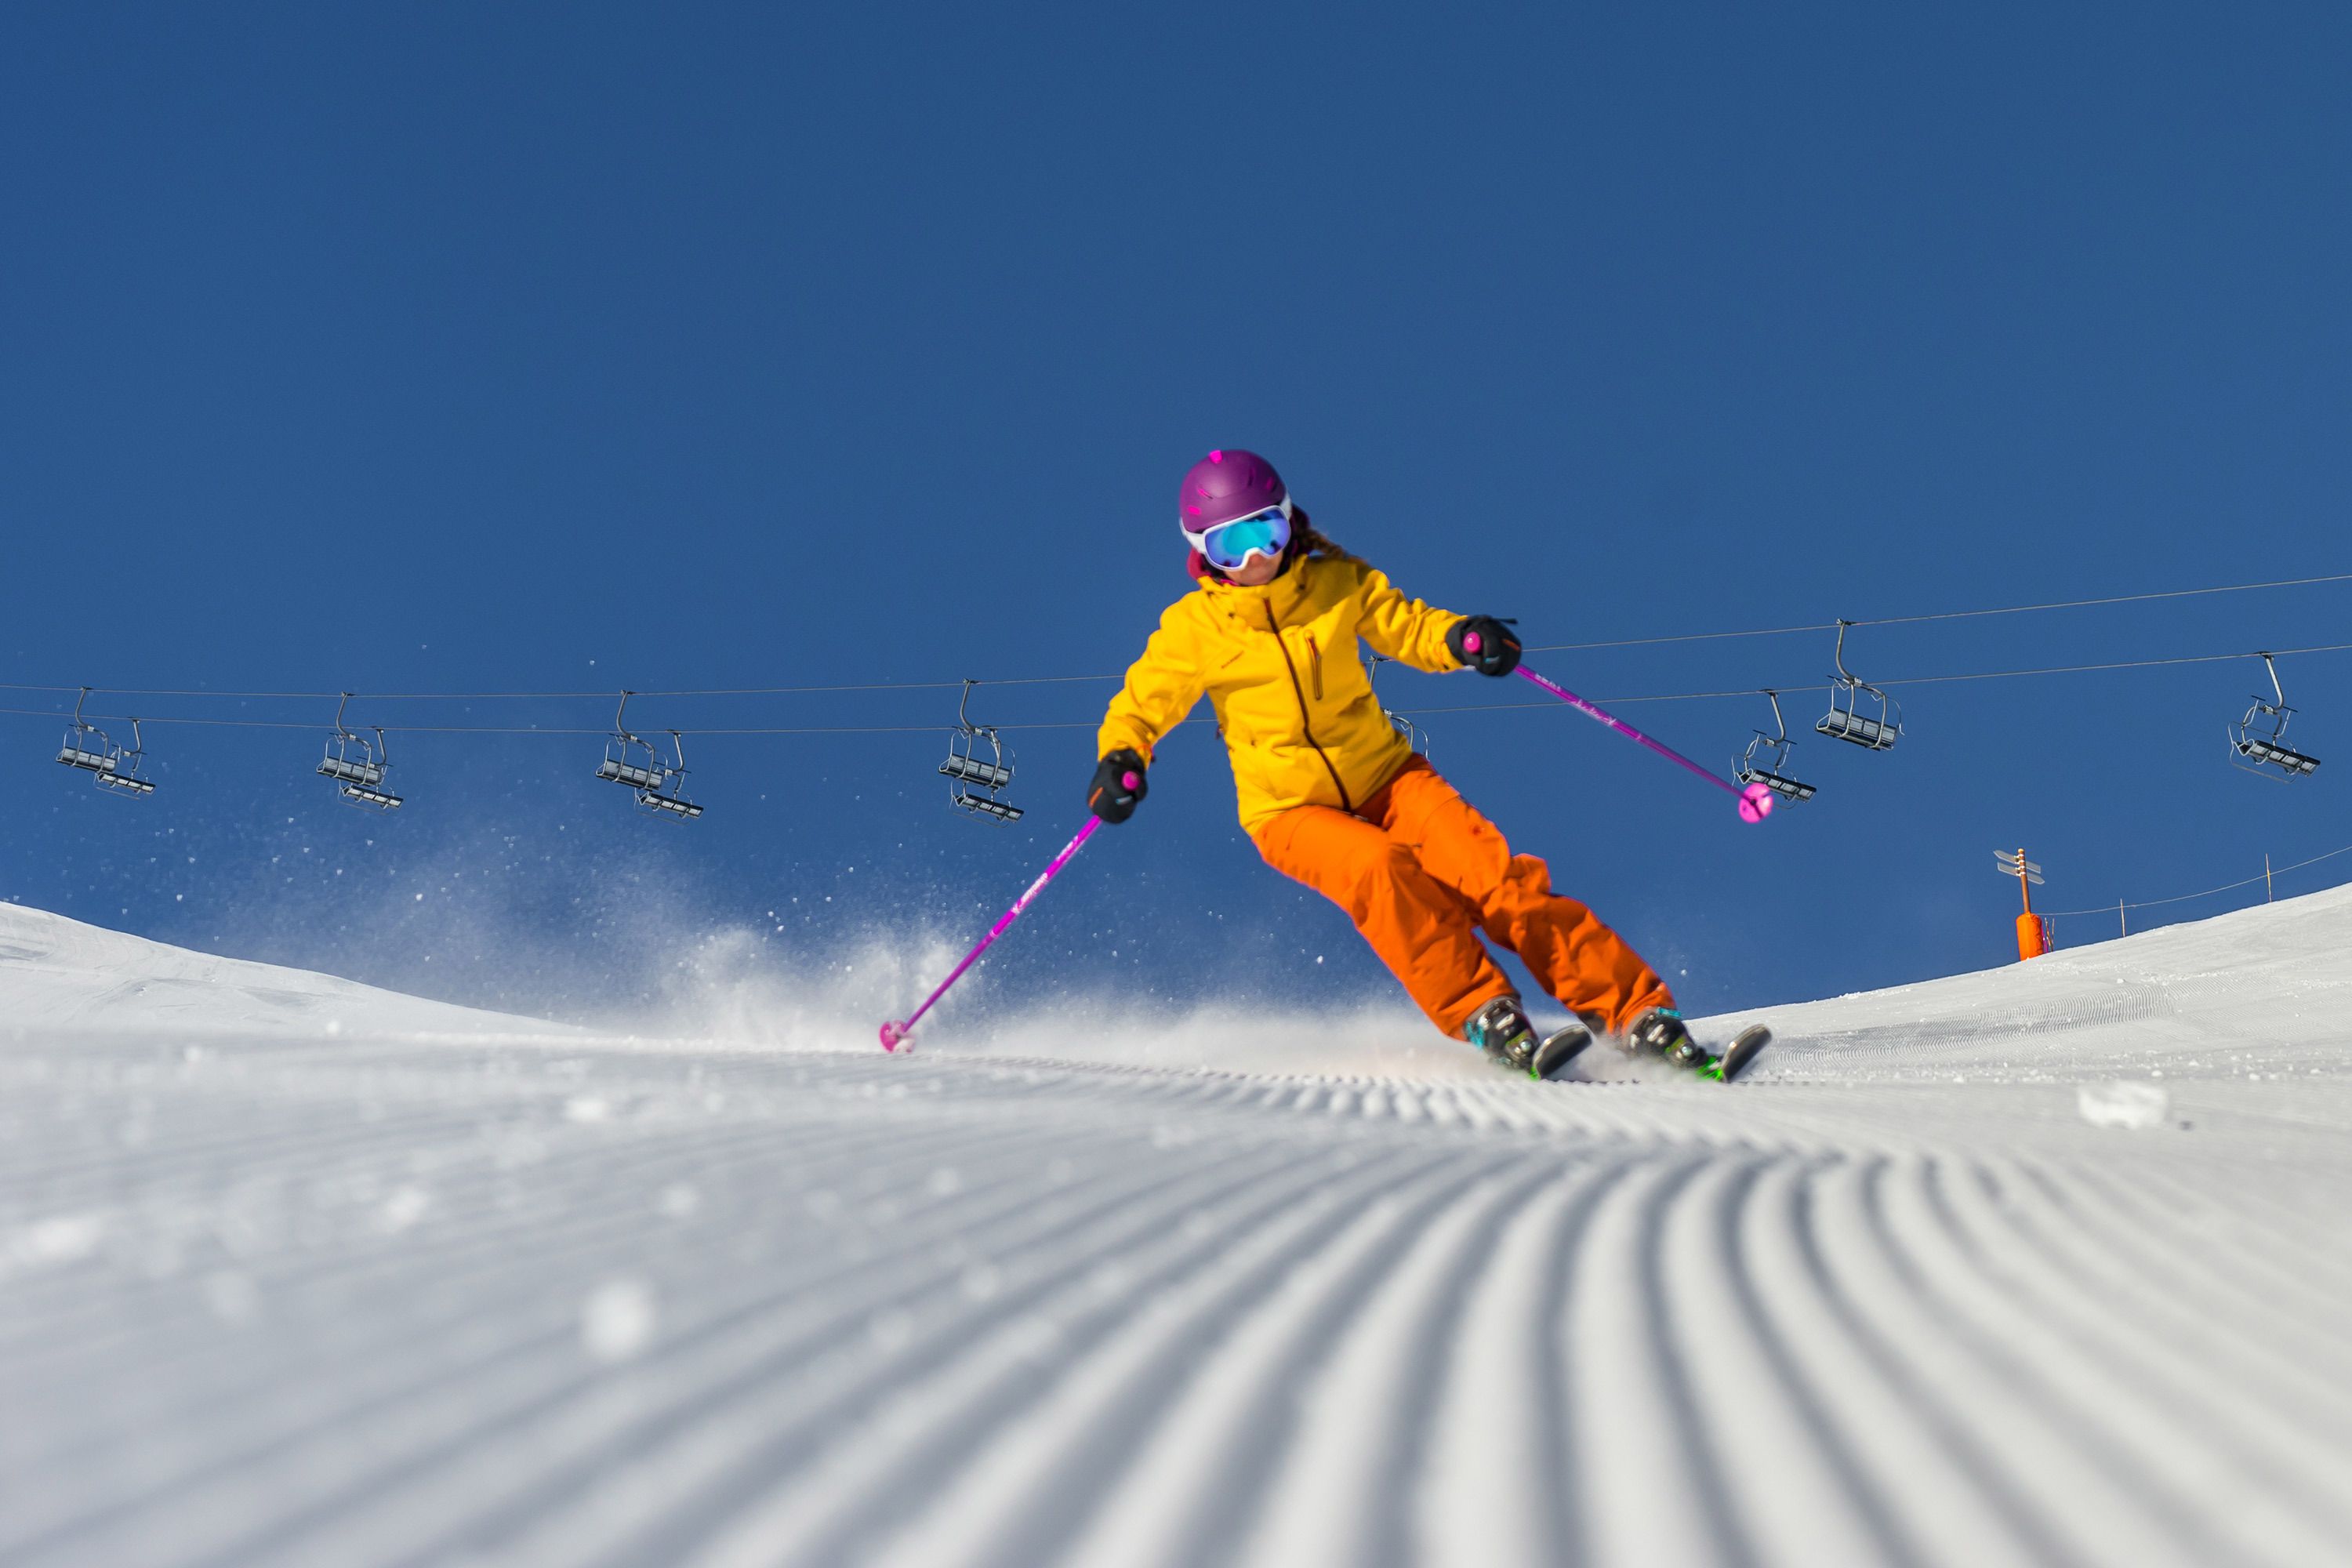 Met de juiste maat ski's is het heerlijk skiën